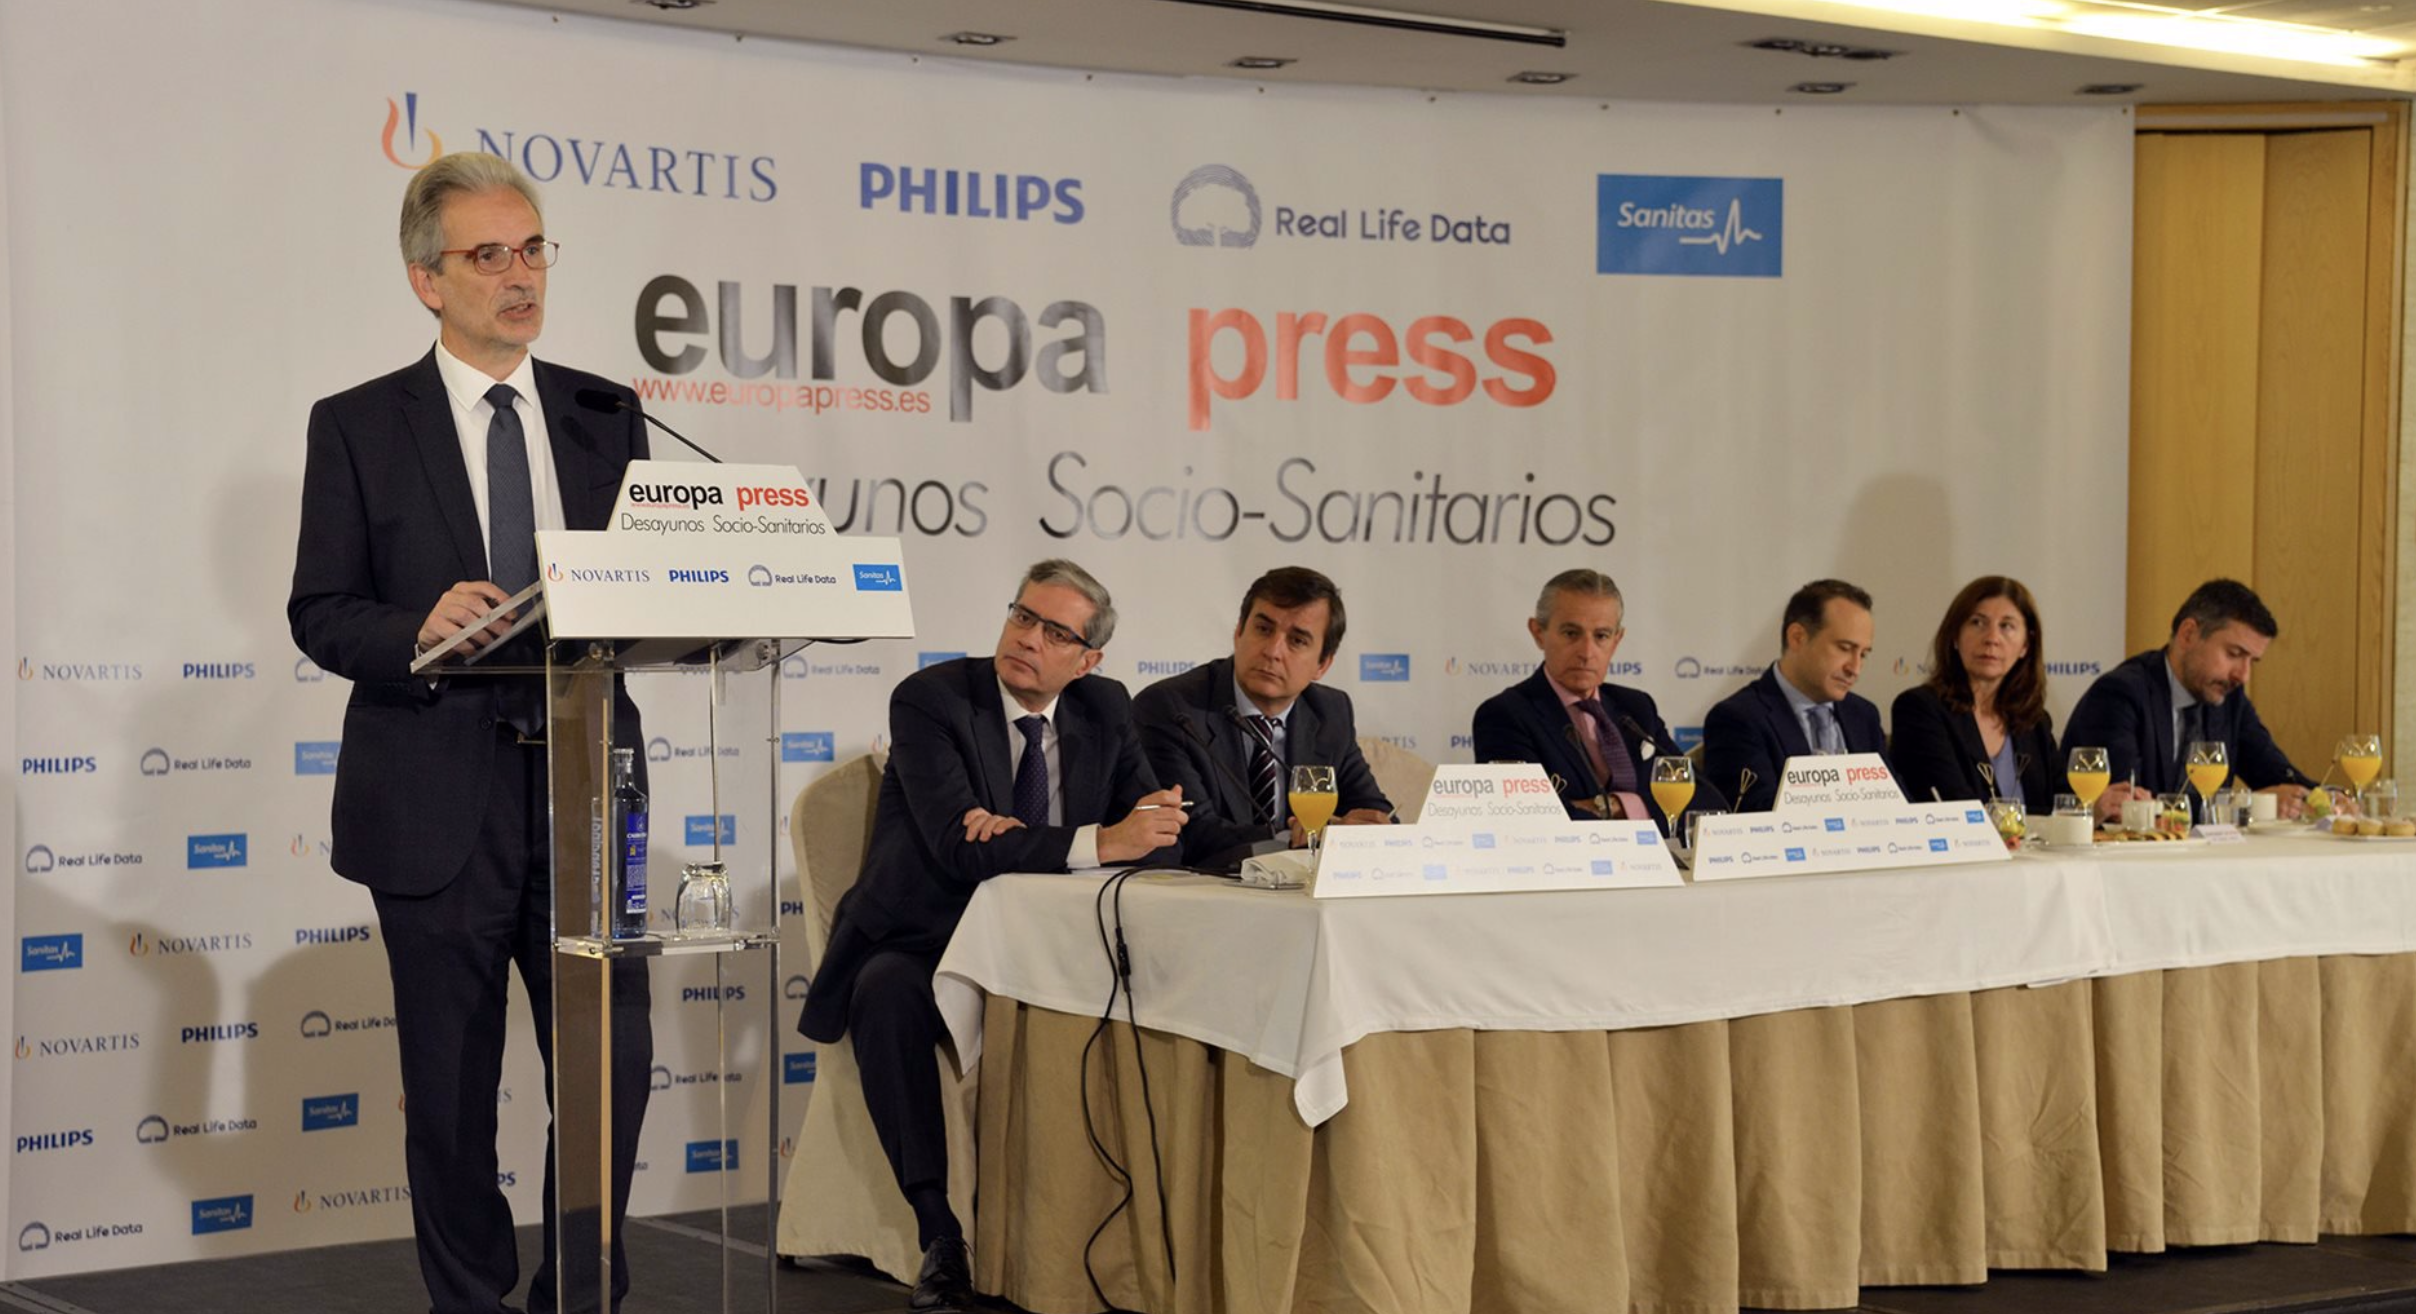 El consejero de Salud de Andalucía reclama un consenso sobre el debate de la eutanasia